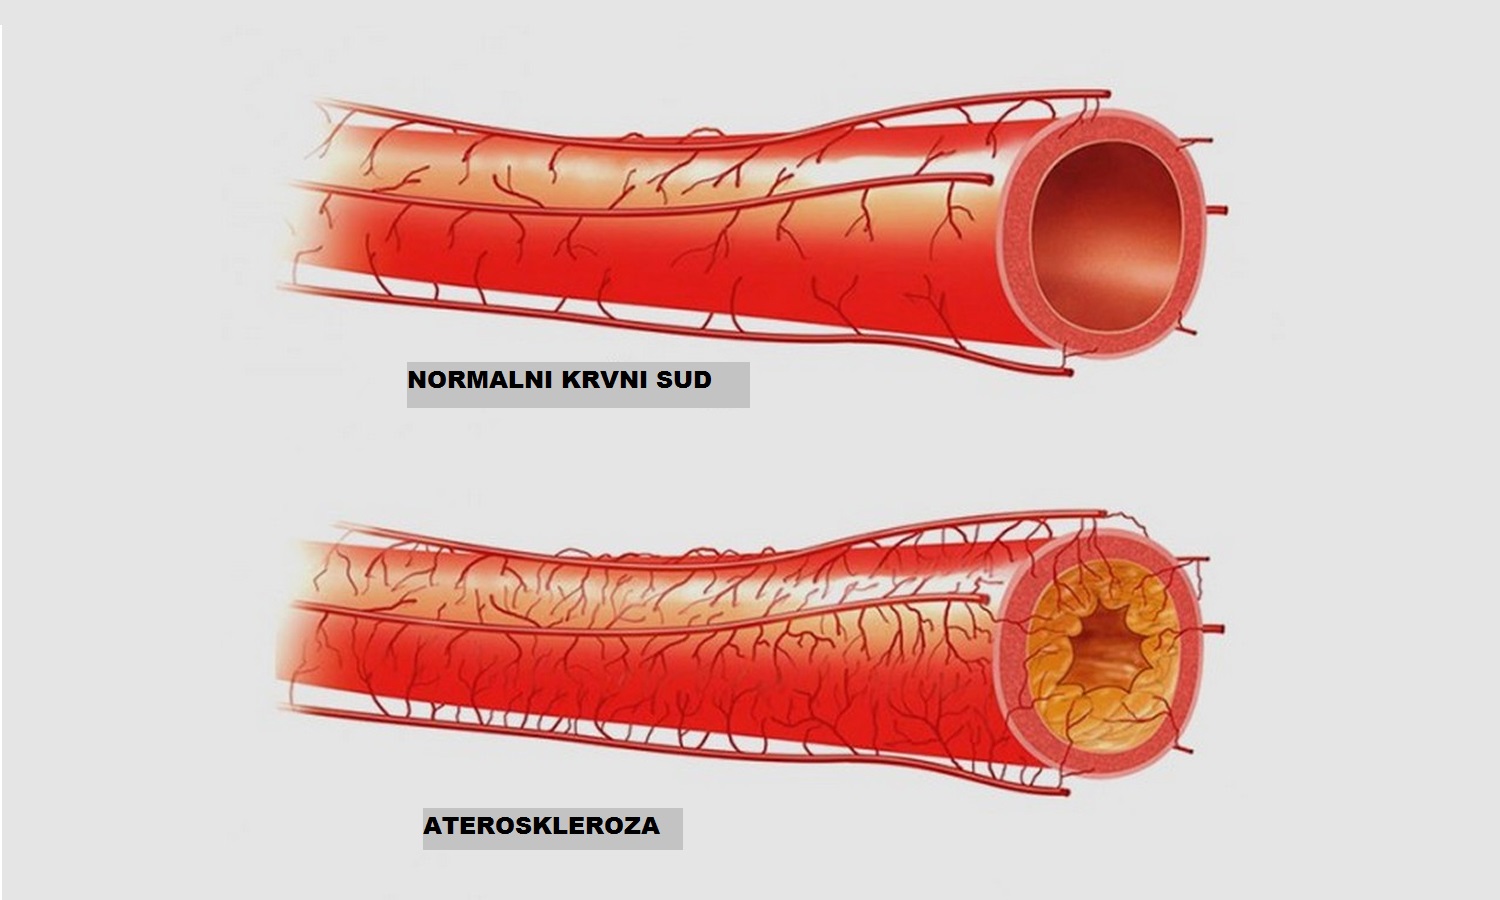 Атеросклеротические атеросклеротические поражения конечностей. Атеросклеротическое поражение кровеносных сосудов. Атеросклероз коронарных артерий симптомы. Атеросклероз сосудов бца. Атеросклеротическое поражение сердечных артерий.